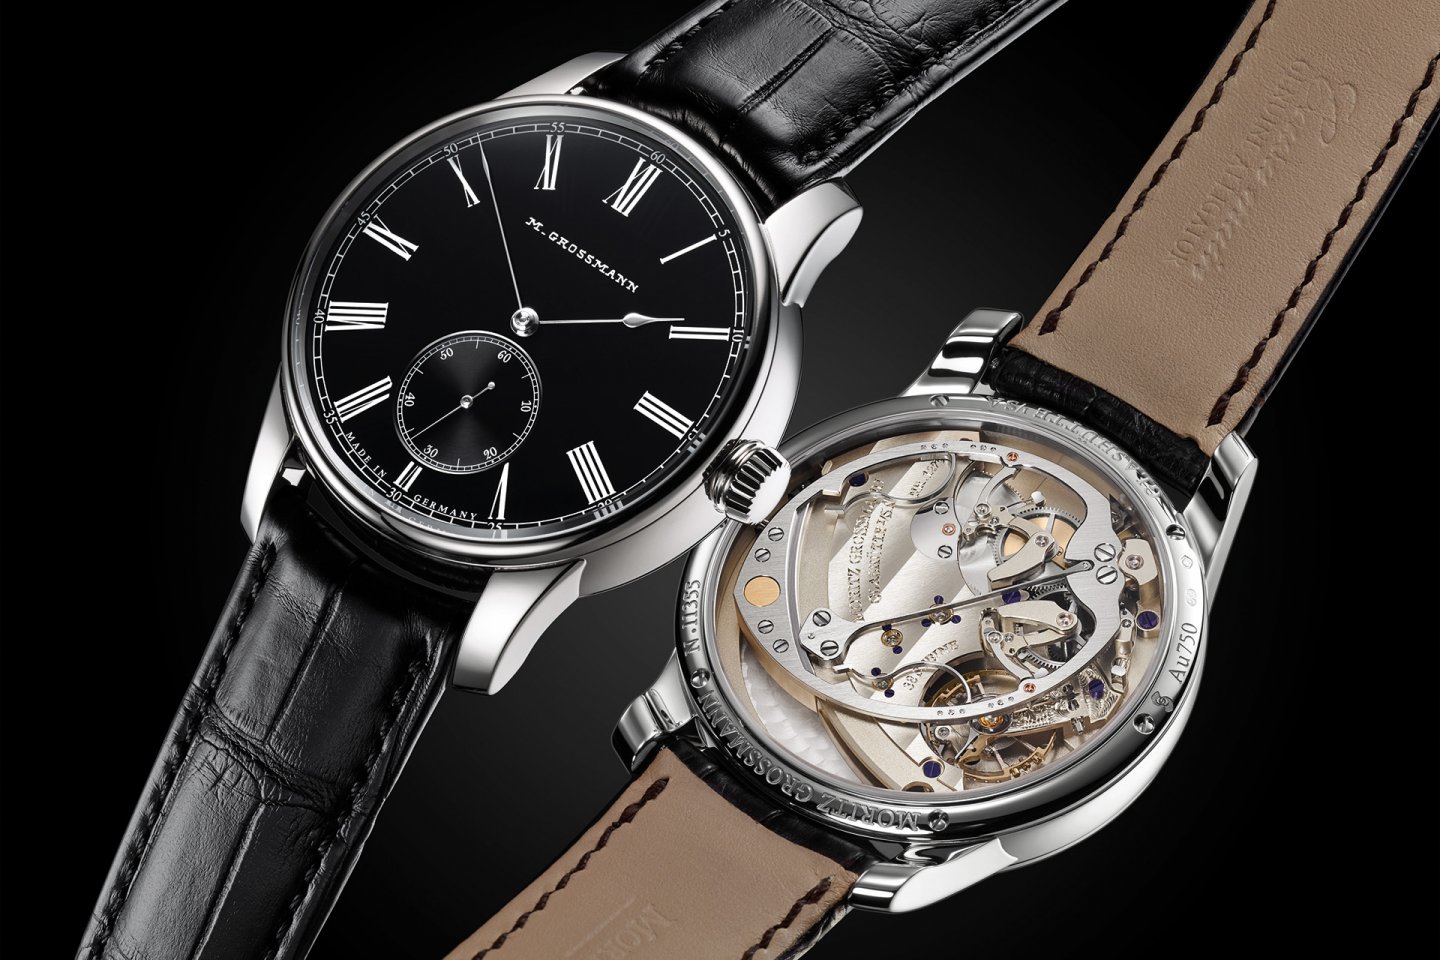 モリッツ・グロスマン、懐中時計のヴィンテージロゴを採用した 「ハマティック」Black-orダイヤルモデルを発表